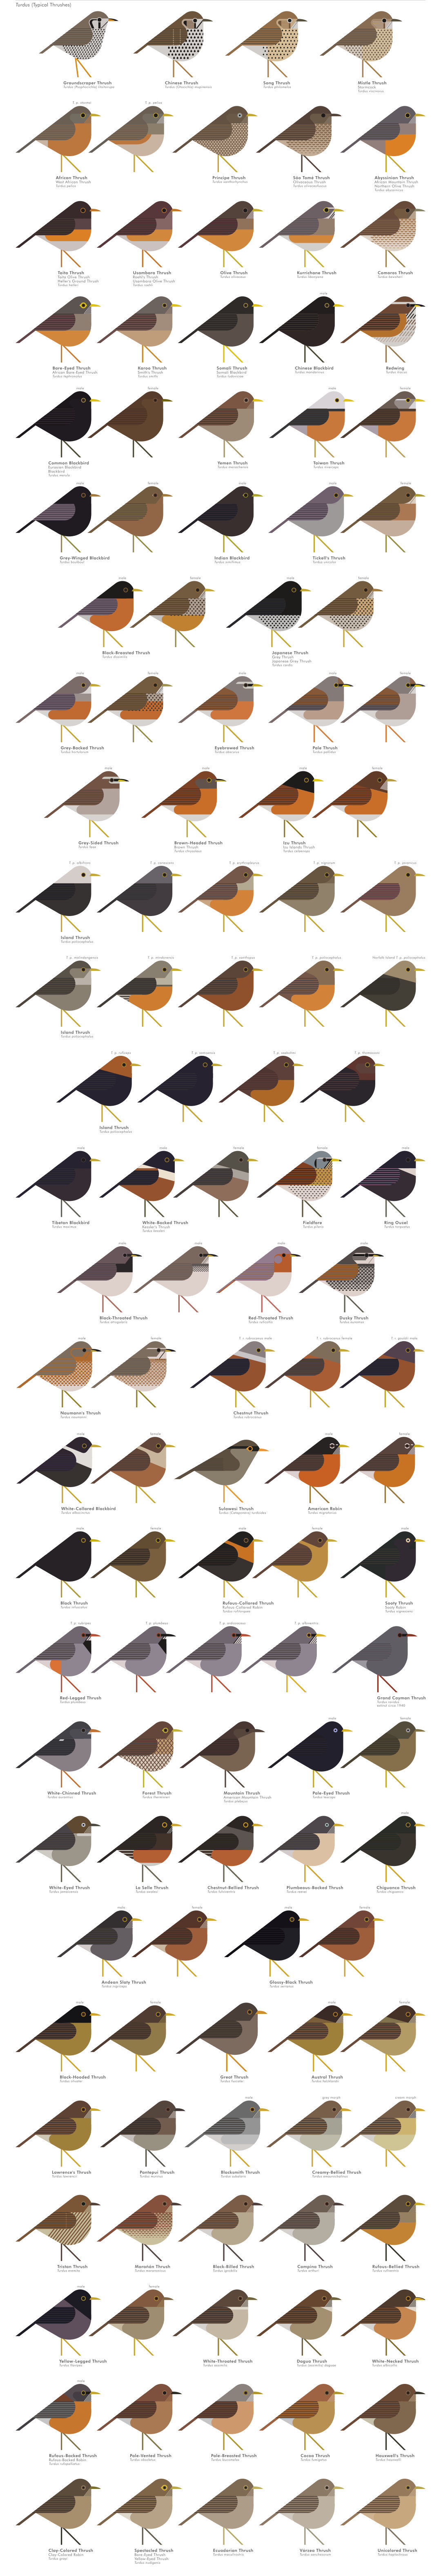 scott partridge - AVE - avian vector encyclopedia - thrushes - thrushes - bird vector art